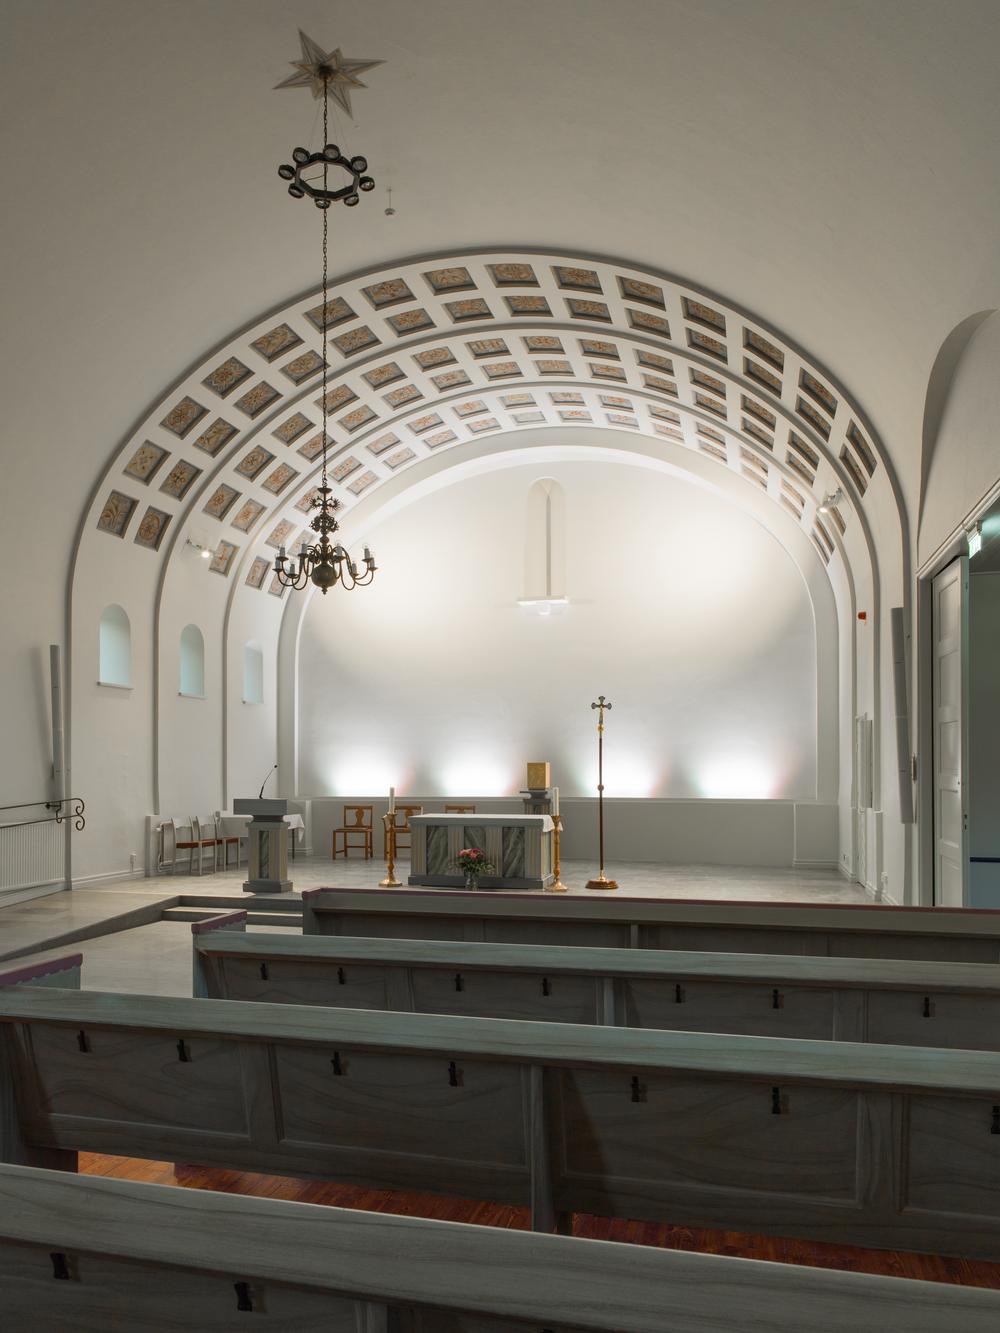 Kyrkoaltaret in Katolska kyrkan i Motala med kupat tak och stolar, ljusstakar.